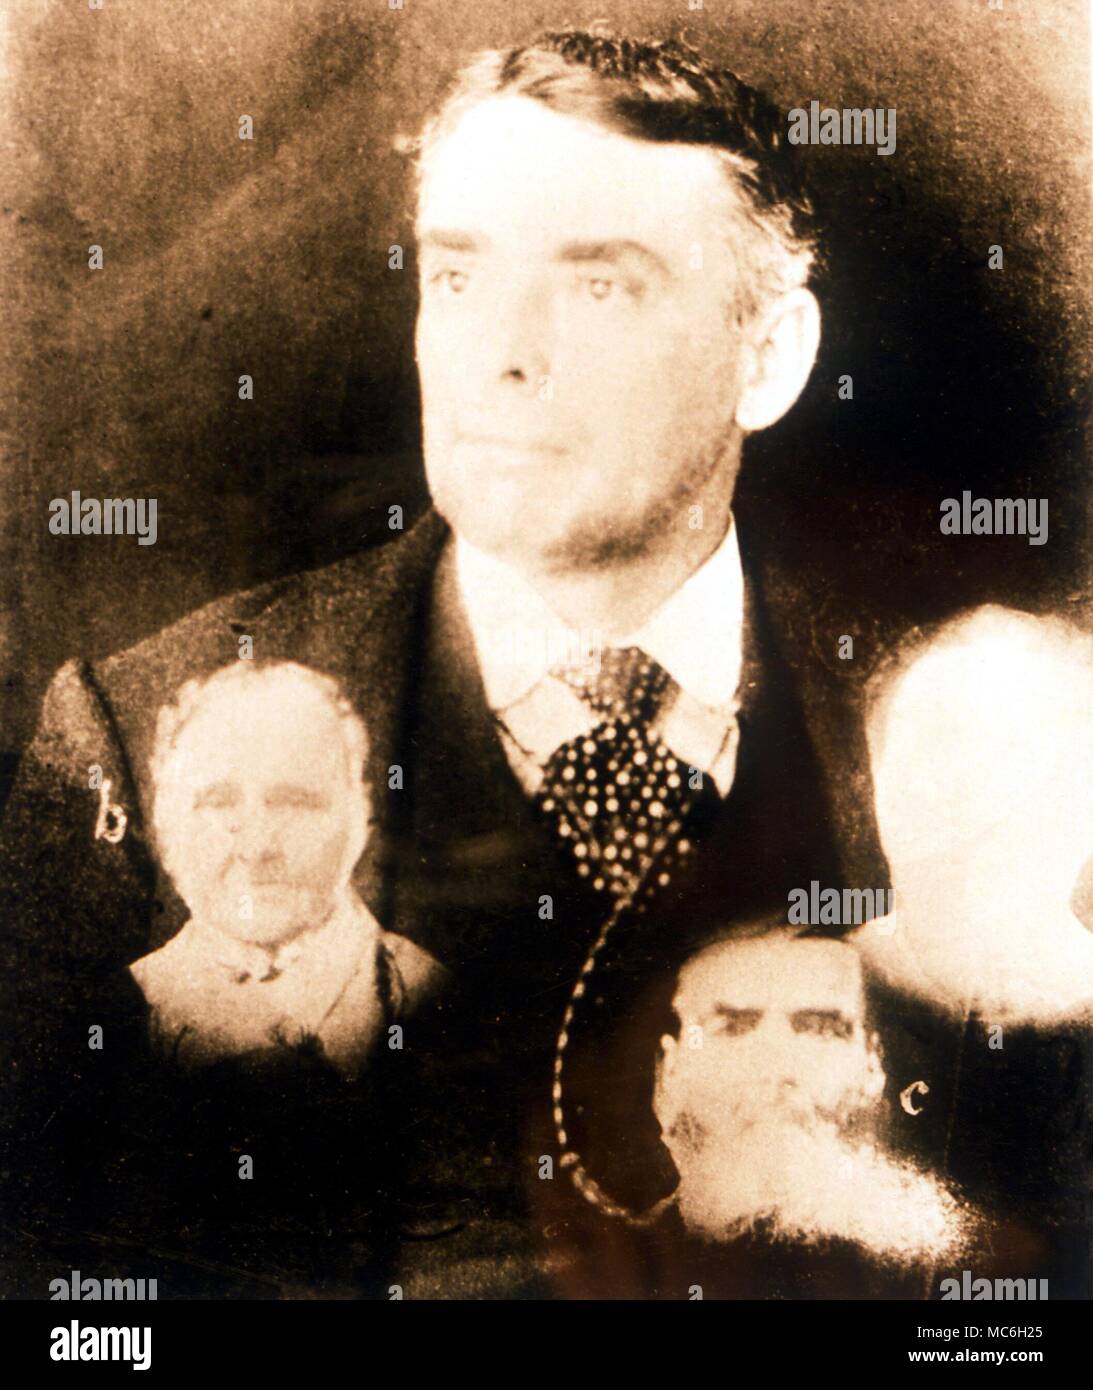 Gespenster - wyllie Bild Foto von lebendigen Subjekt mit mehreren gespenstischen 'Extras', vom Amerikanischen psychische Fotograf Edward Wyllie, um 1890 getroffen Stockfoto